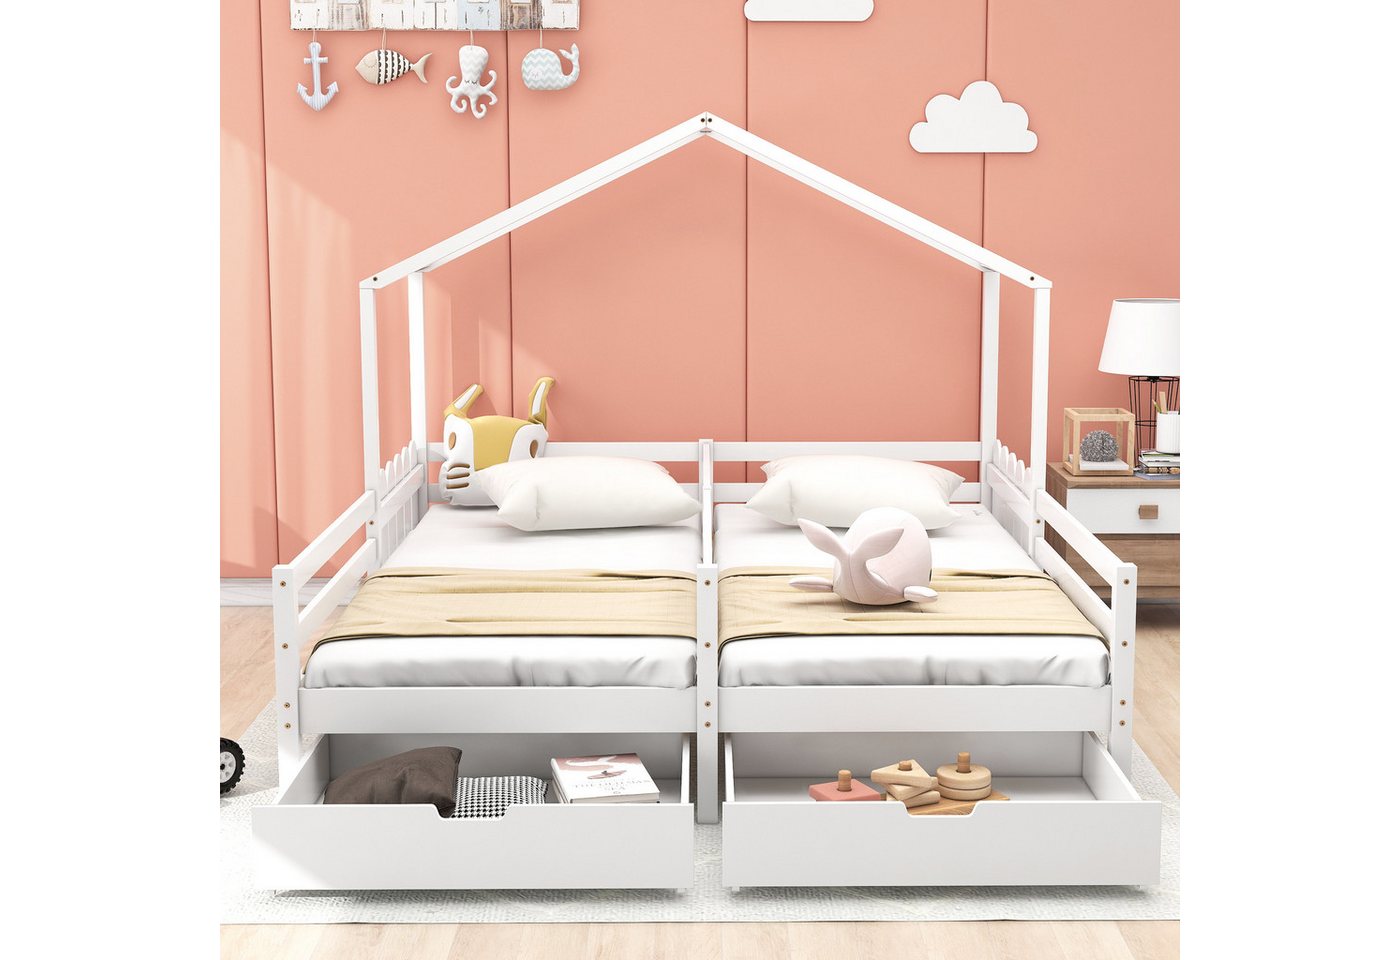 IDEASY Hausbett Jugendbett mit 2 Schubladen, 200 x 90 cm, (stabile Struktur, einfacher Aufbau), integrierte Leichtlaufrollen von IDEASY